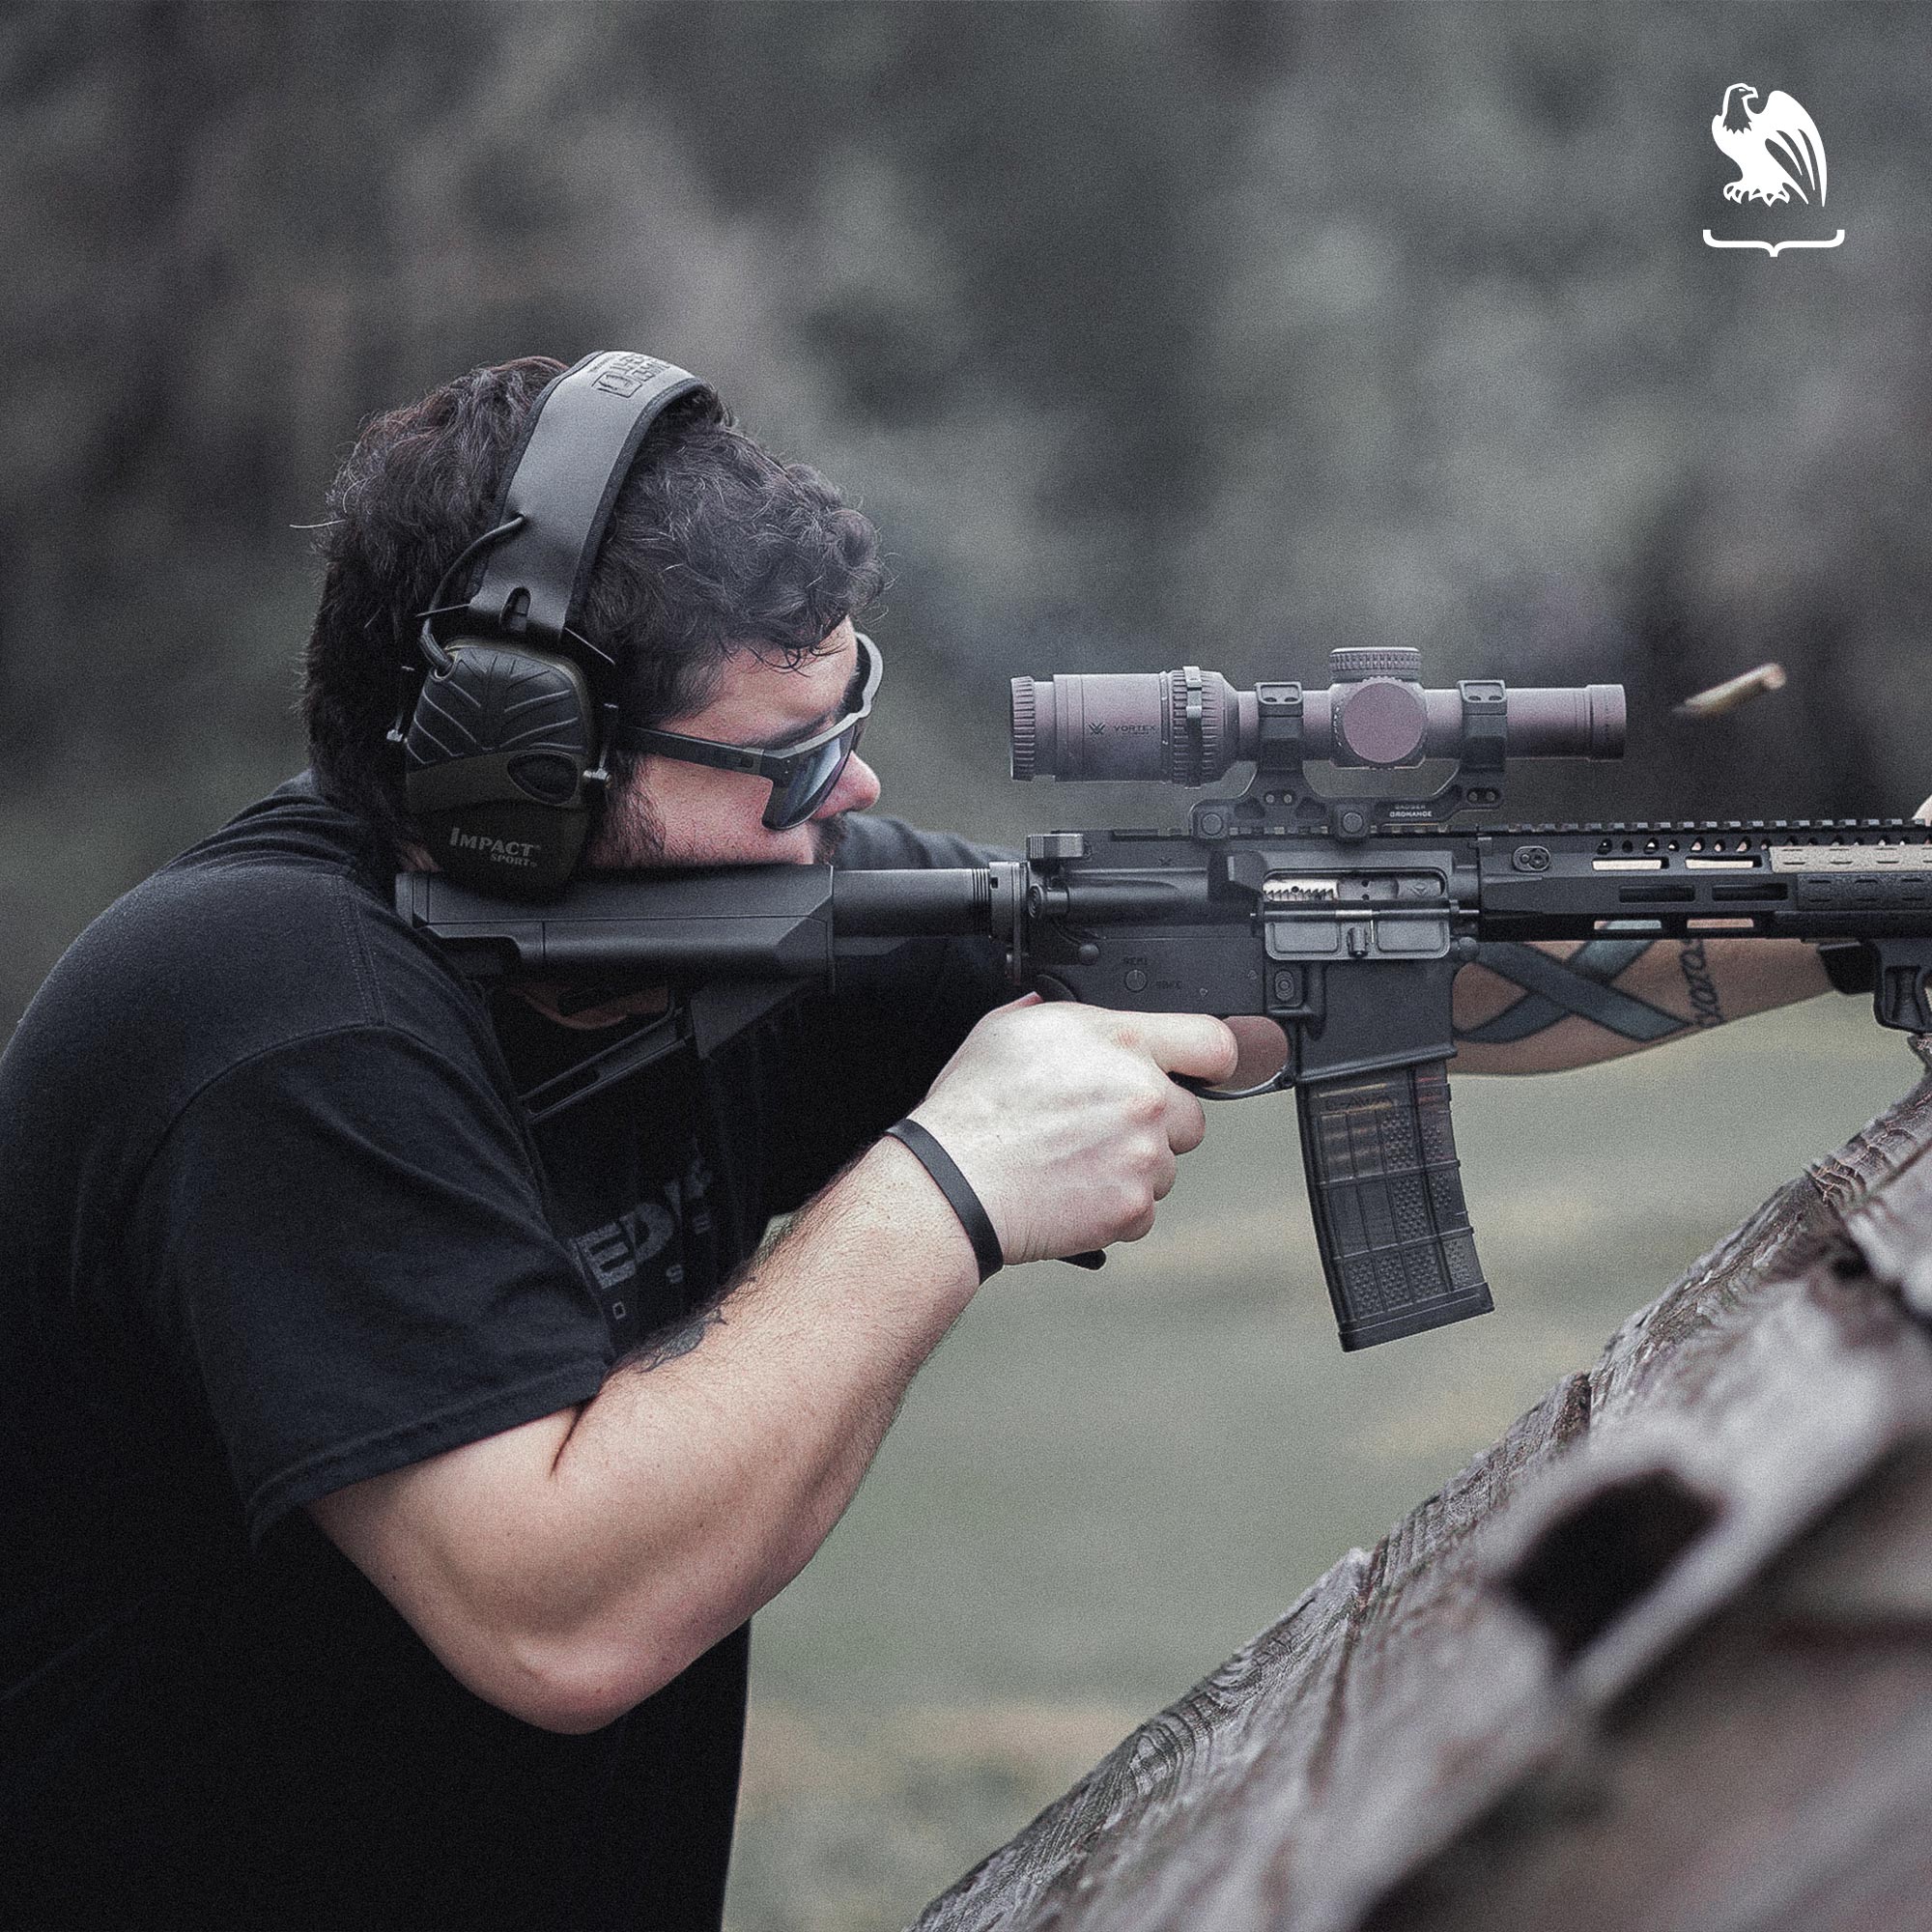 Eyewear - Man shooting a rifle at a gun range wearing eyewear for protection.